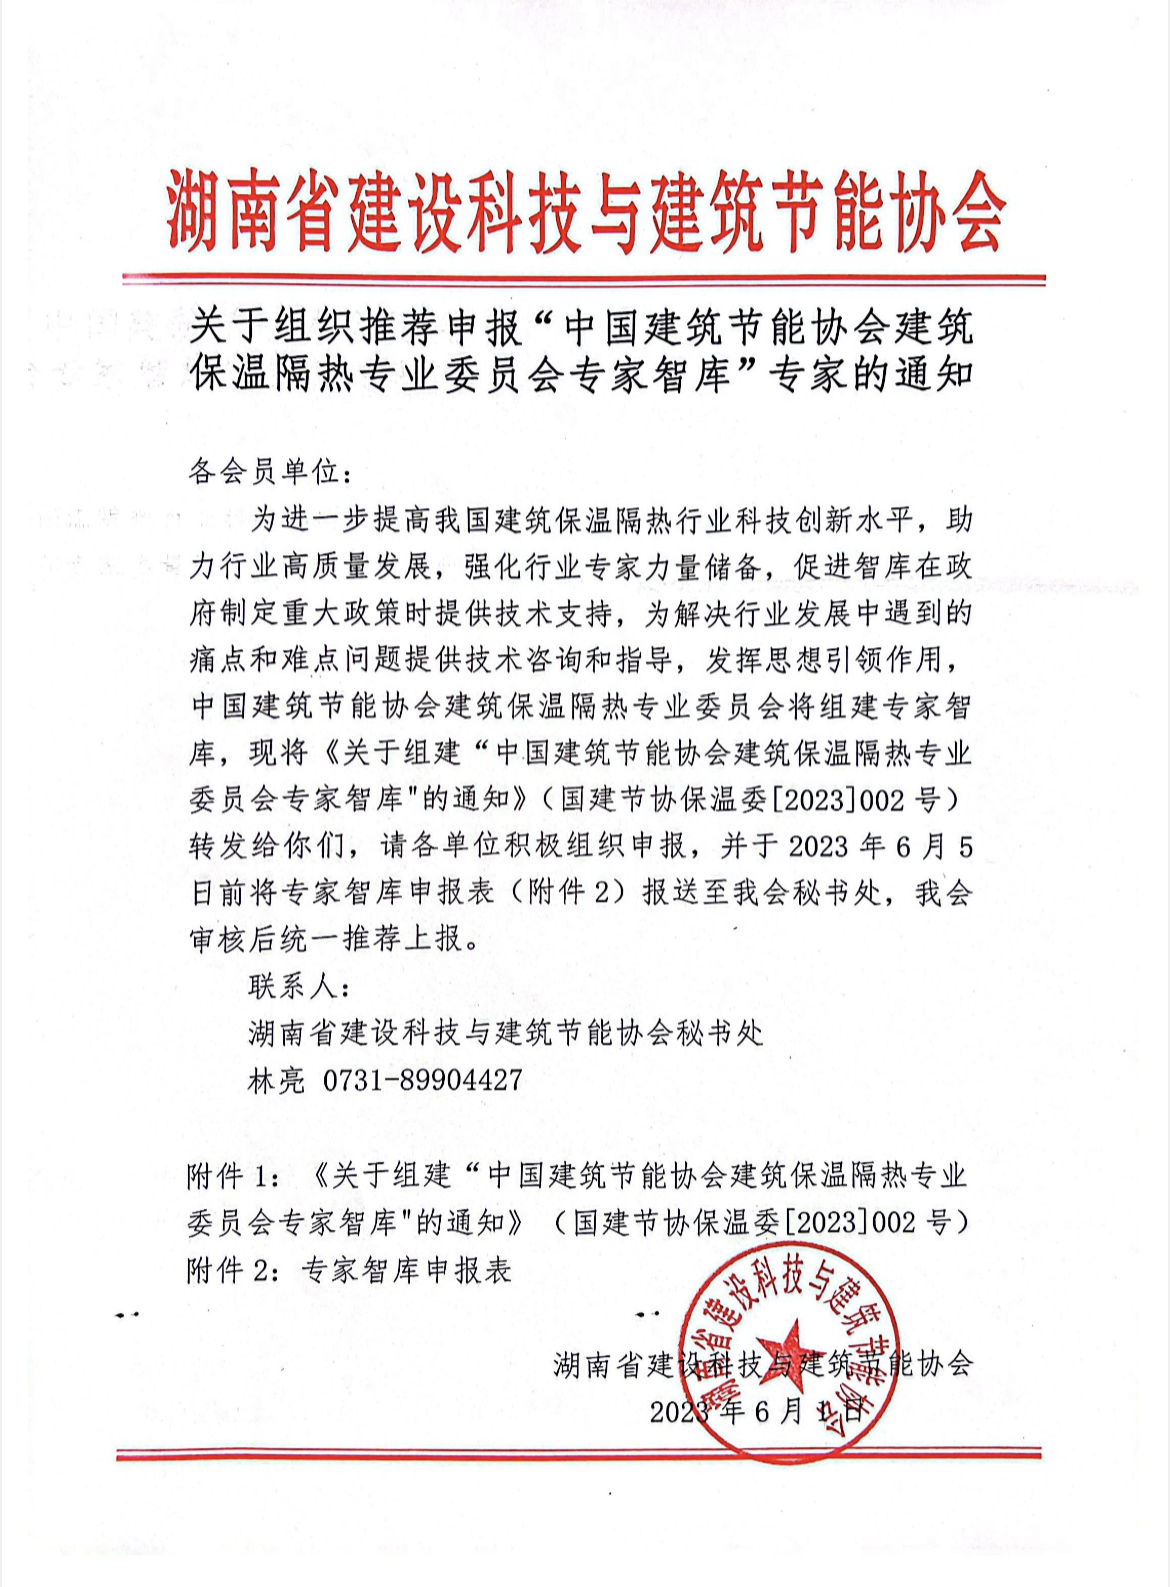 关于组织推荐申报“中国建筑节能协会建筑保温隔热专业委员会专家智库”专家的通知